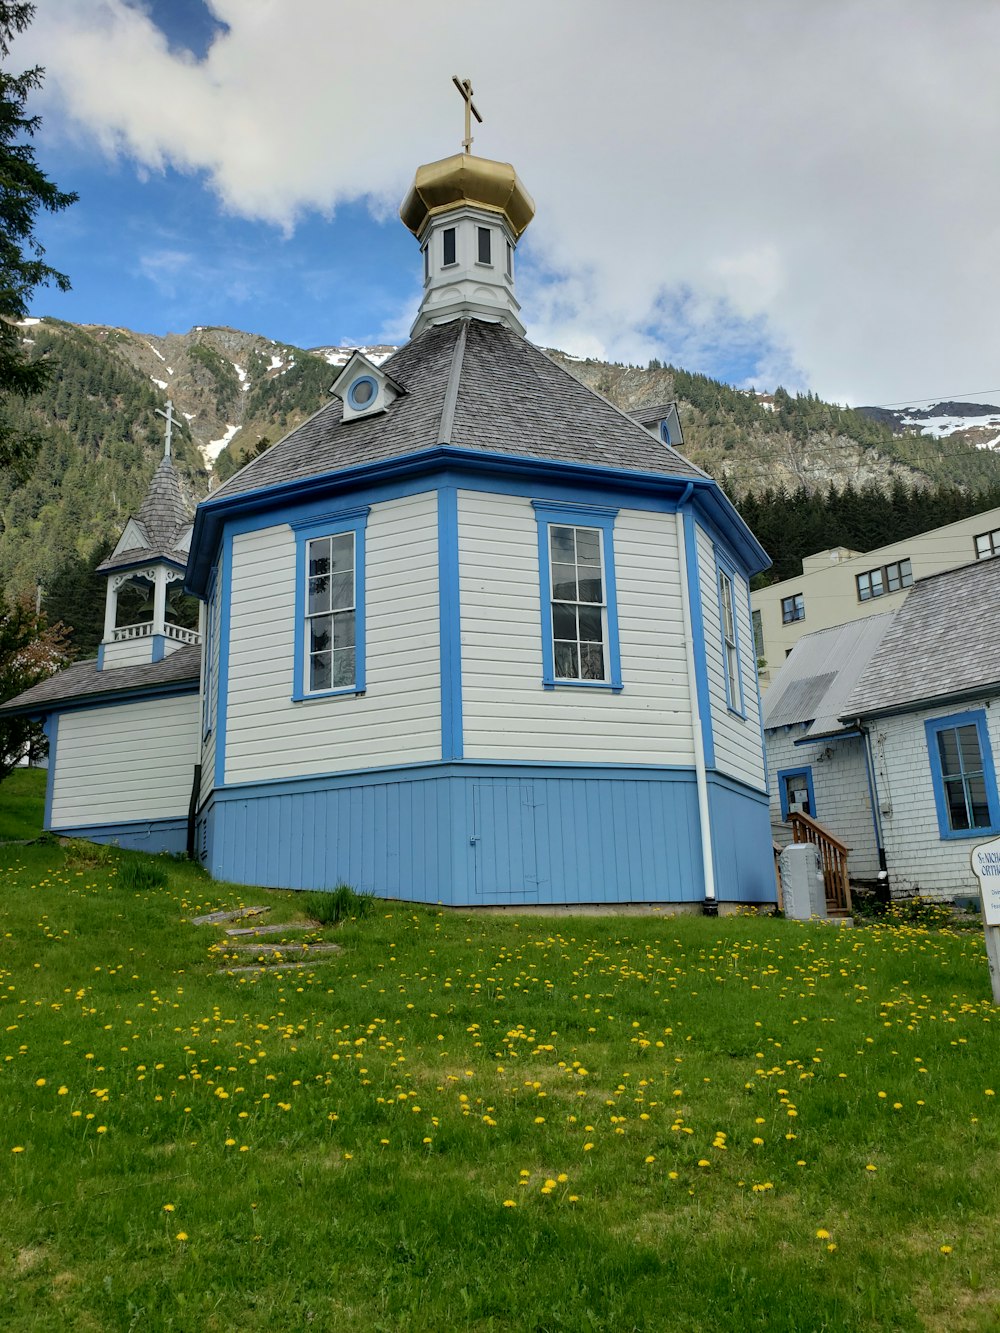 Casa de madera azul y blanca en un campo de hierba verde cerca de la montaña durante el día